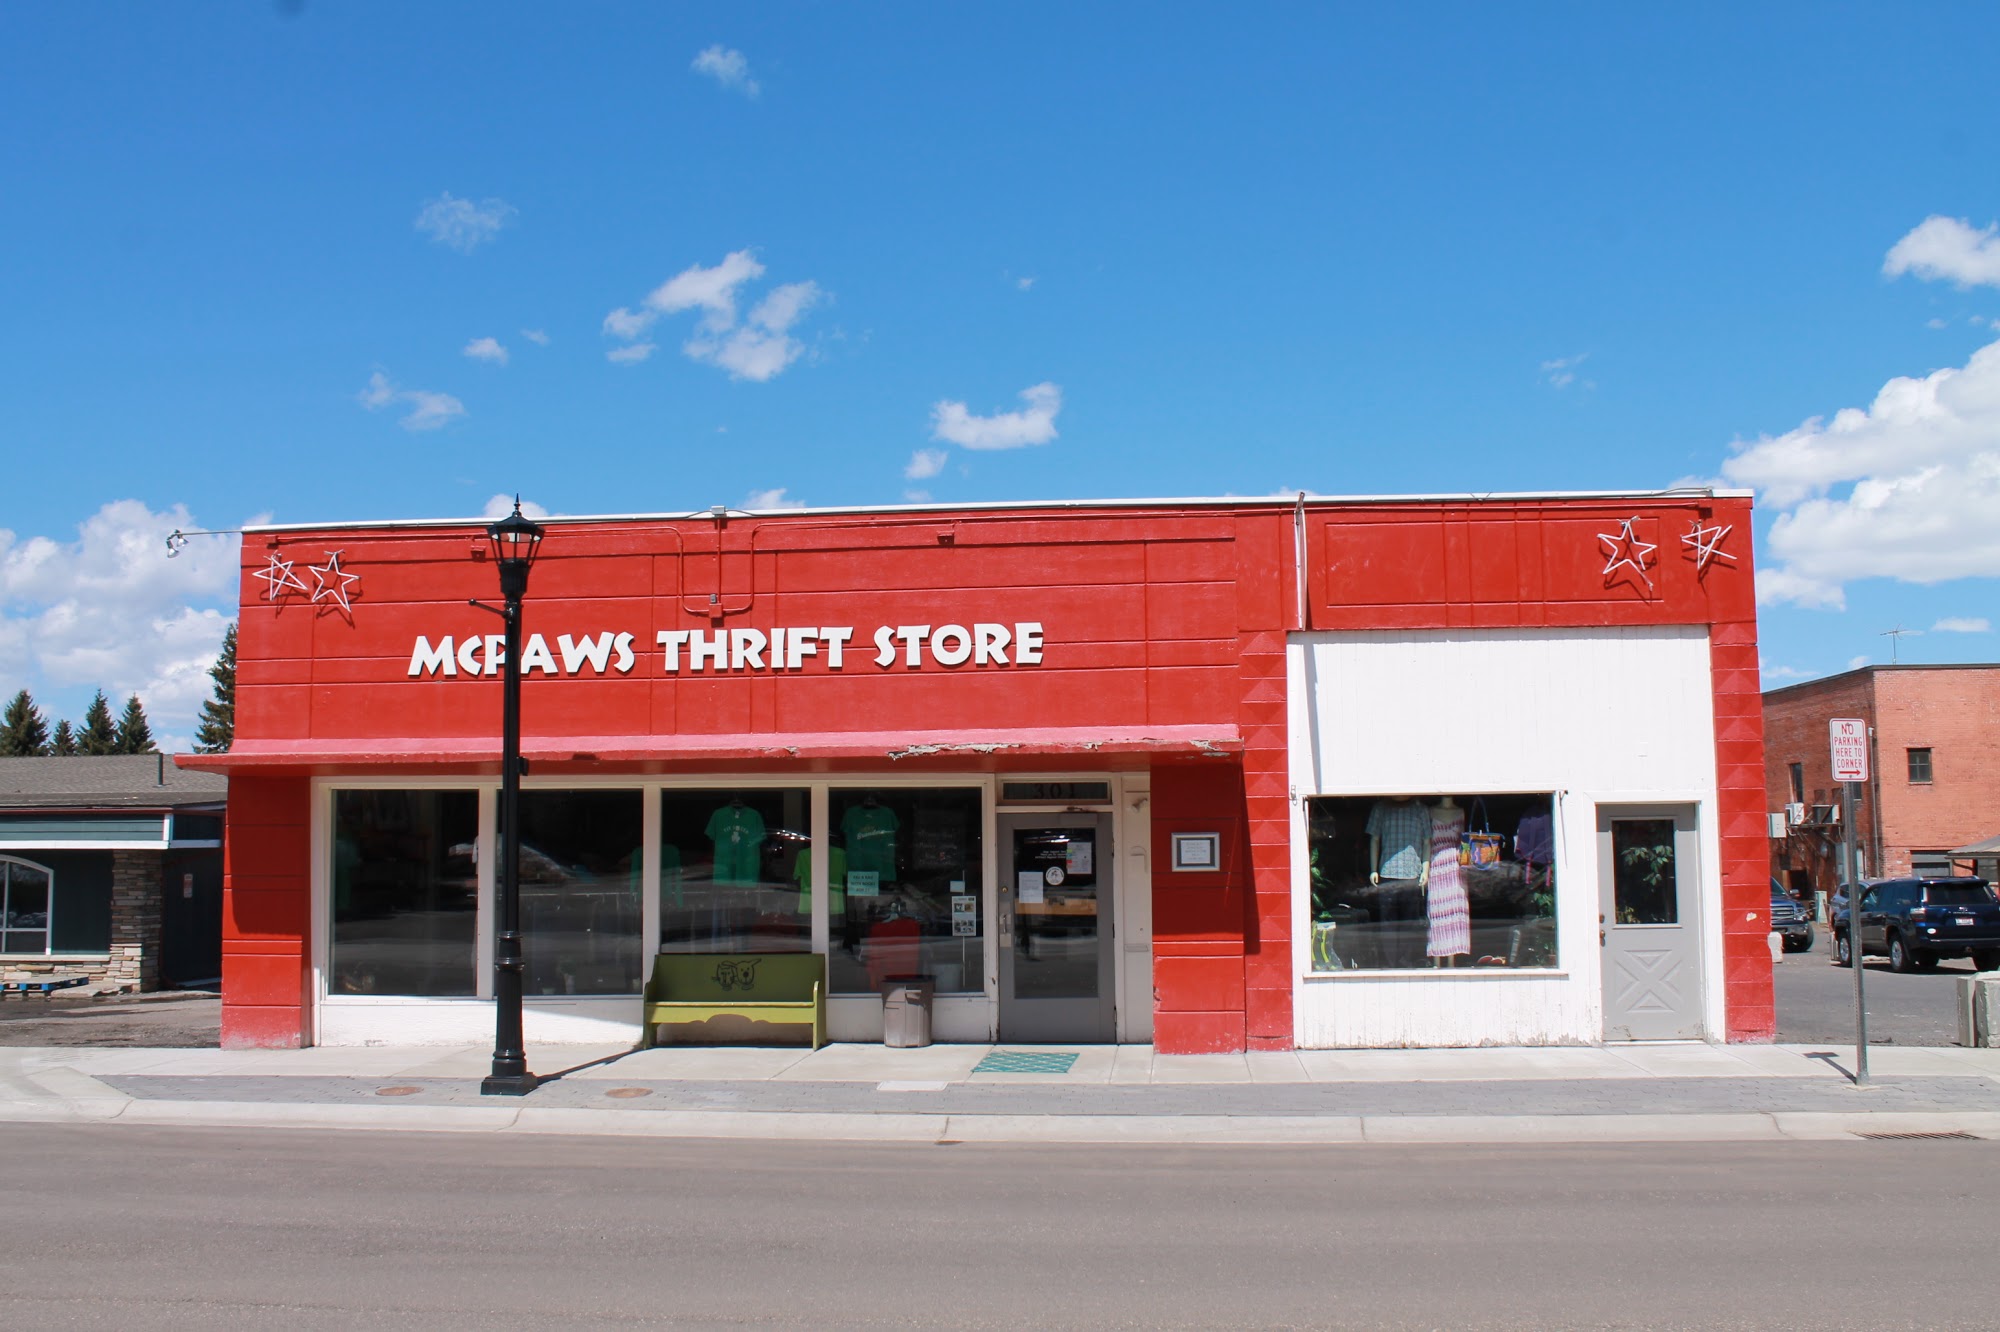 MCPAWS Thrift Store